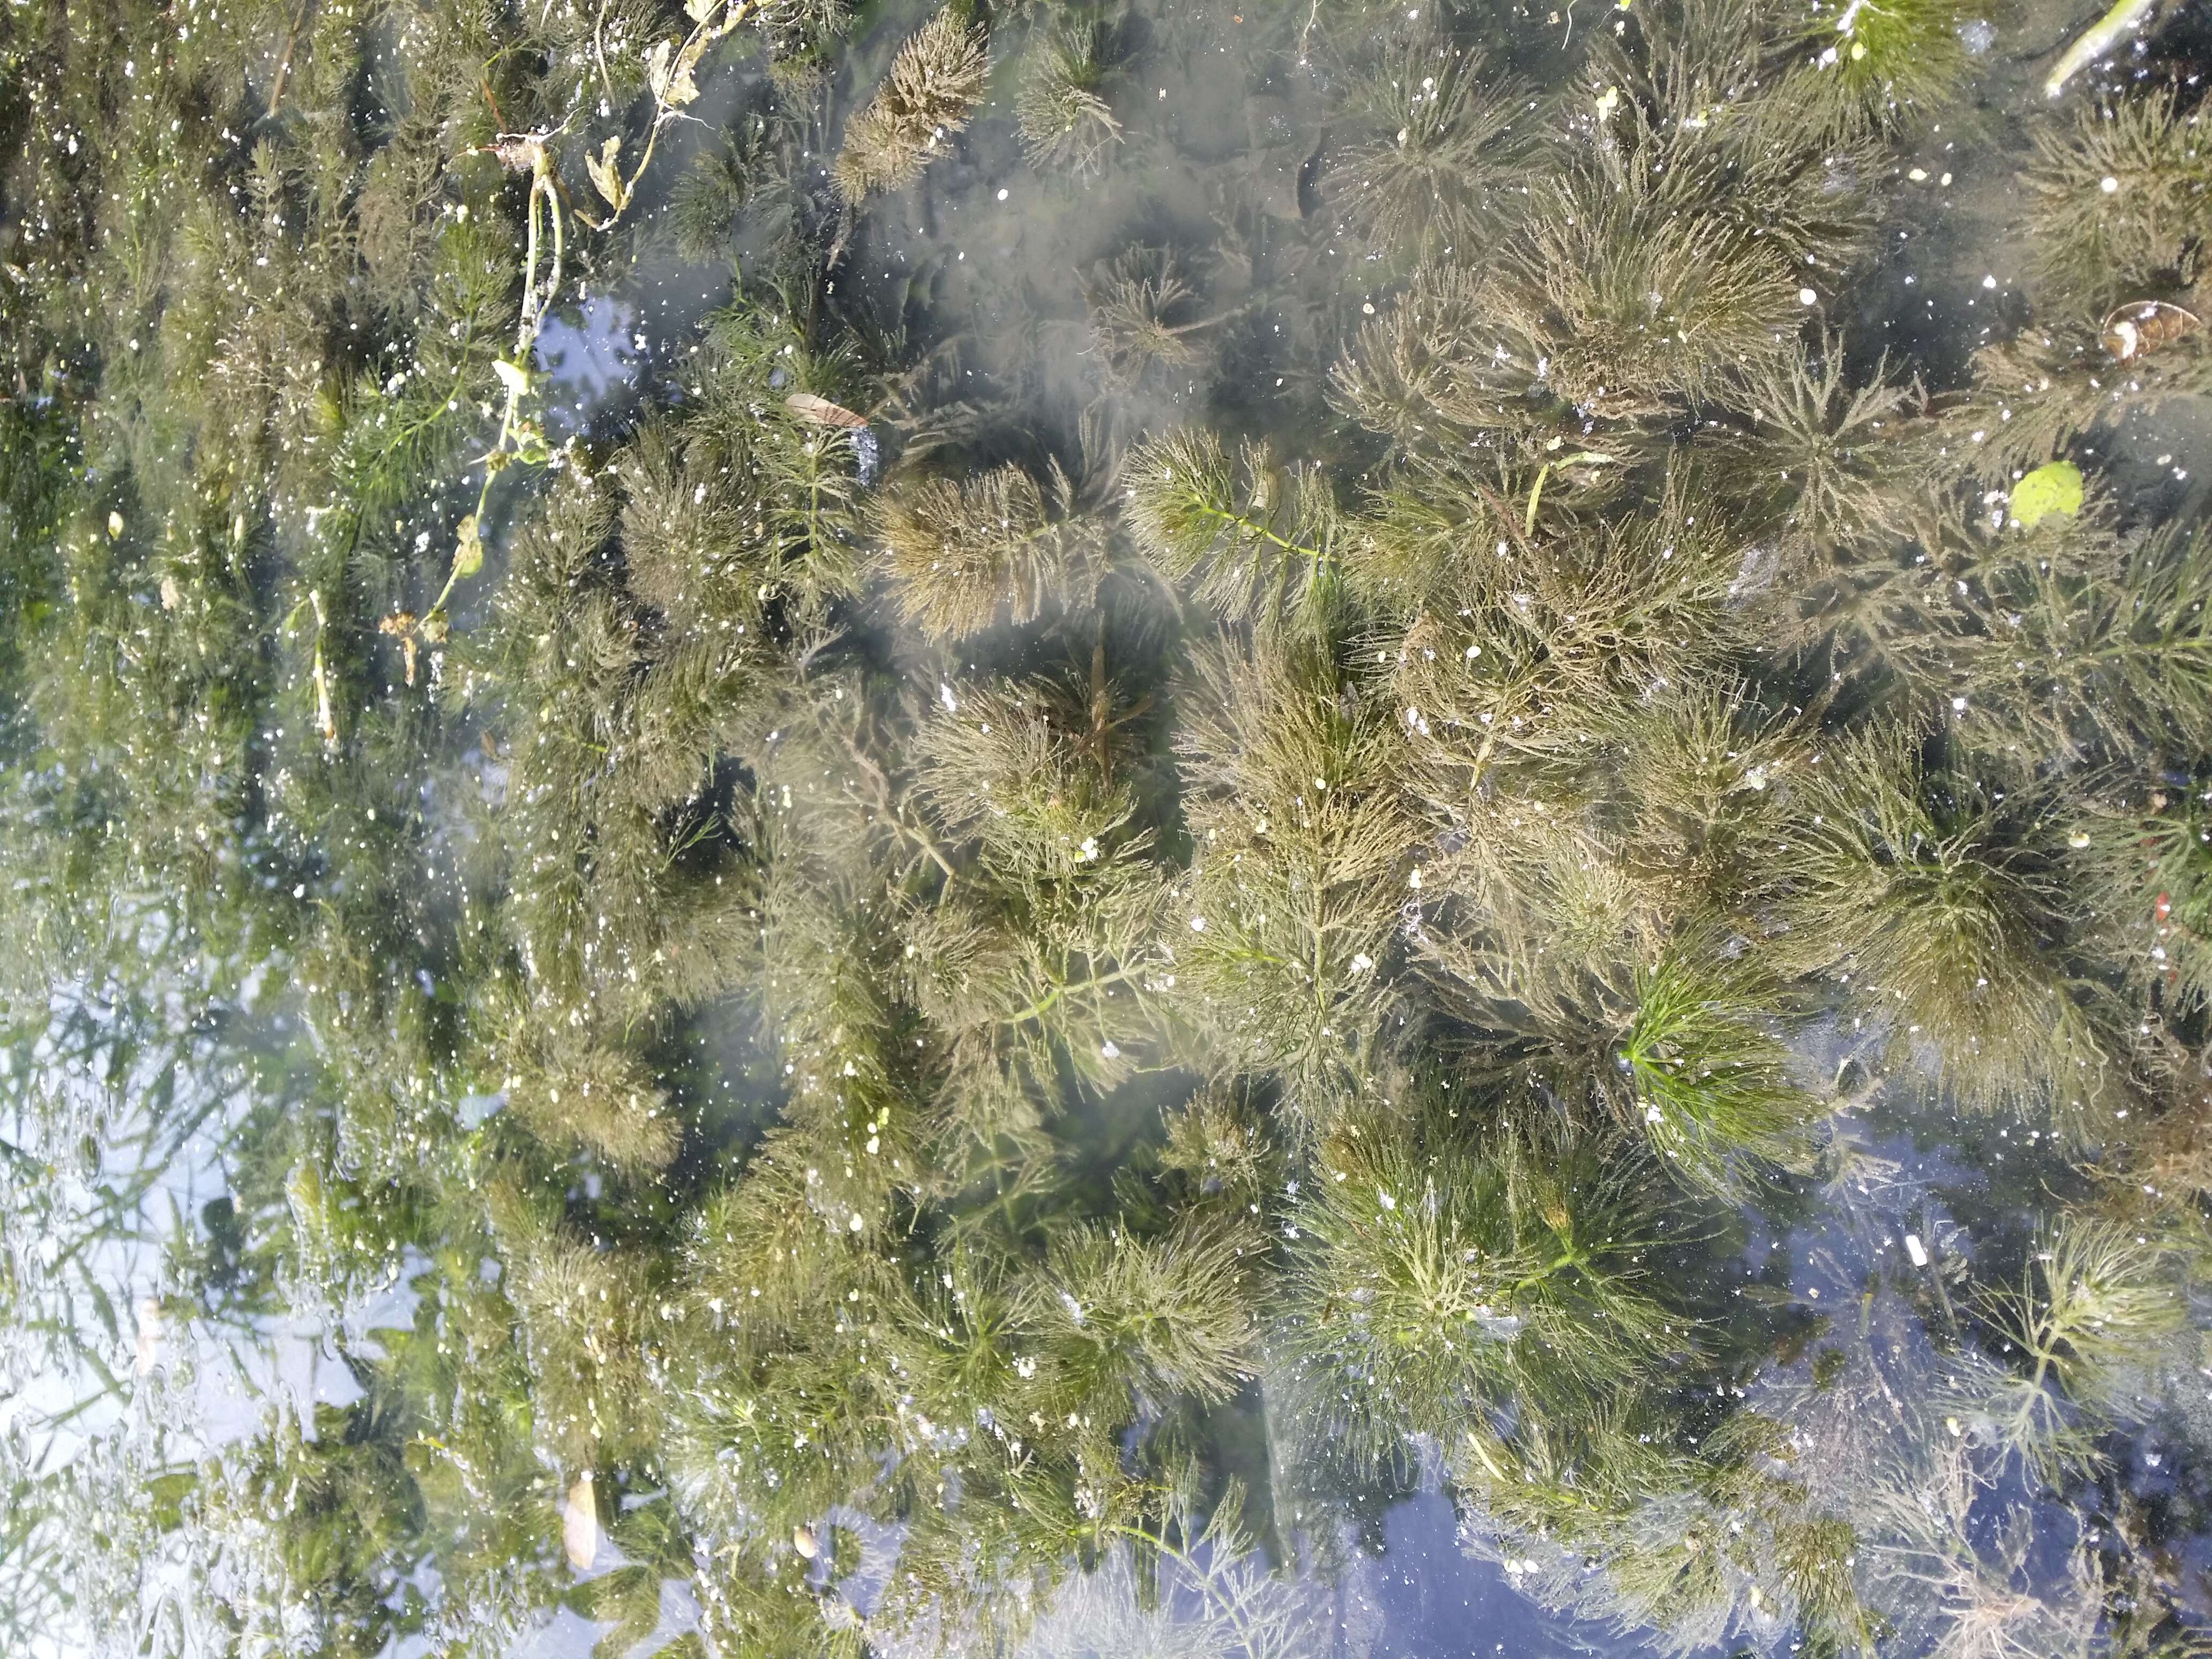 Image de Cératophylle Submergé